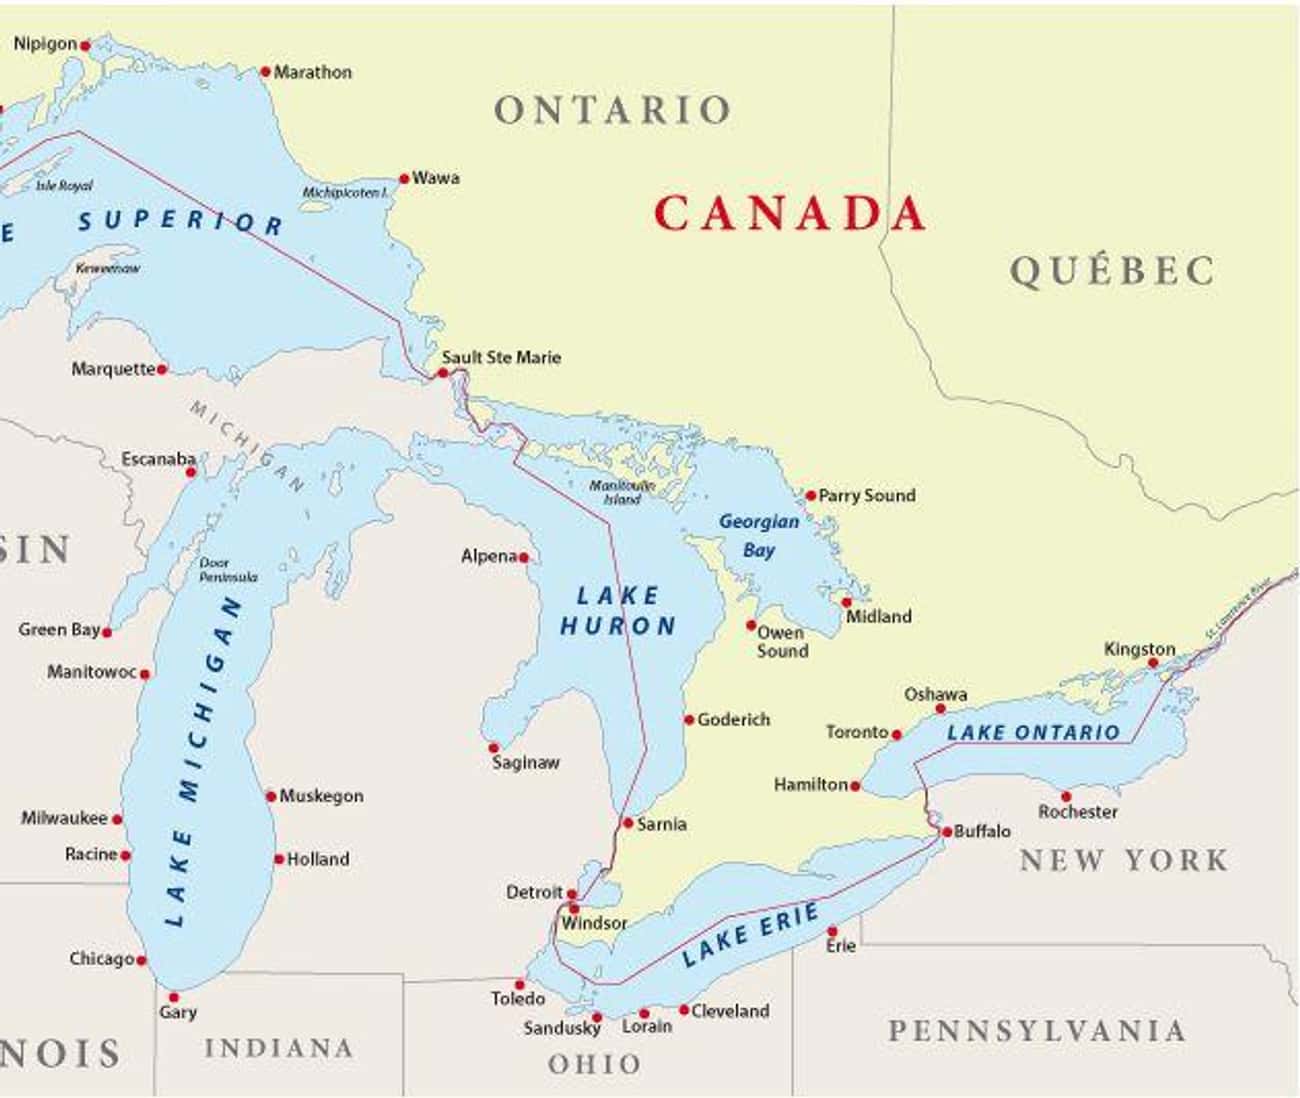 Великие американские озера на карте